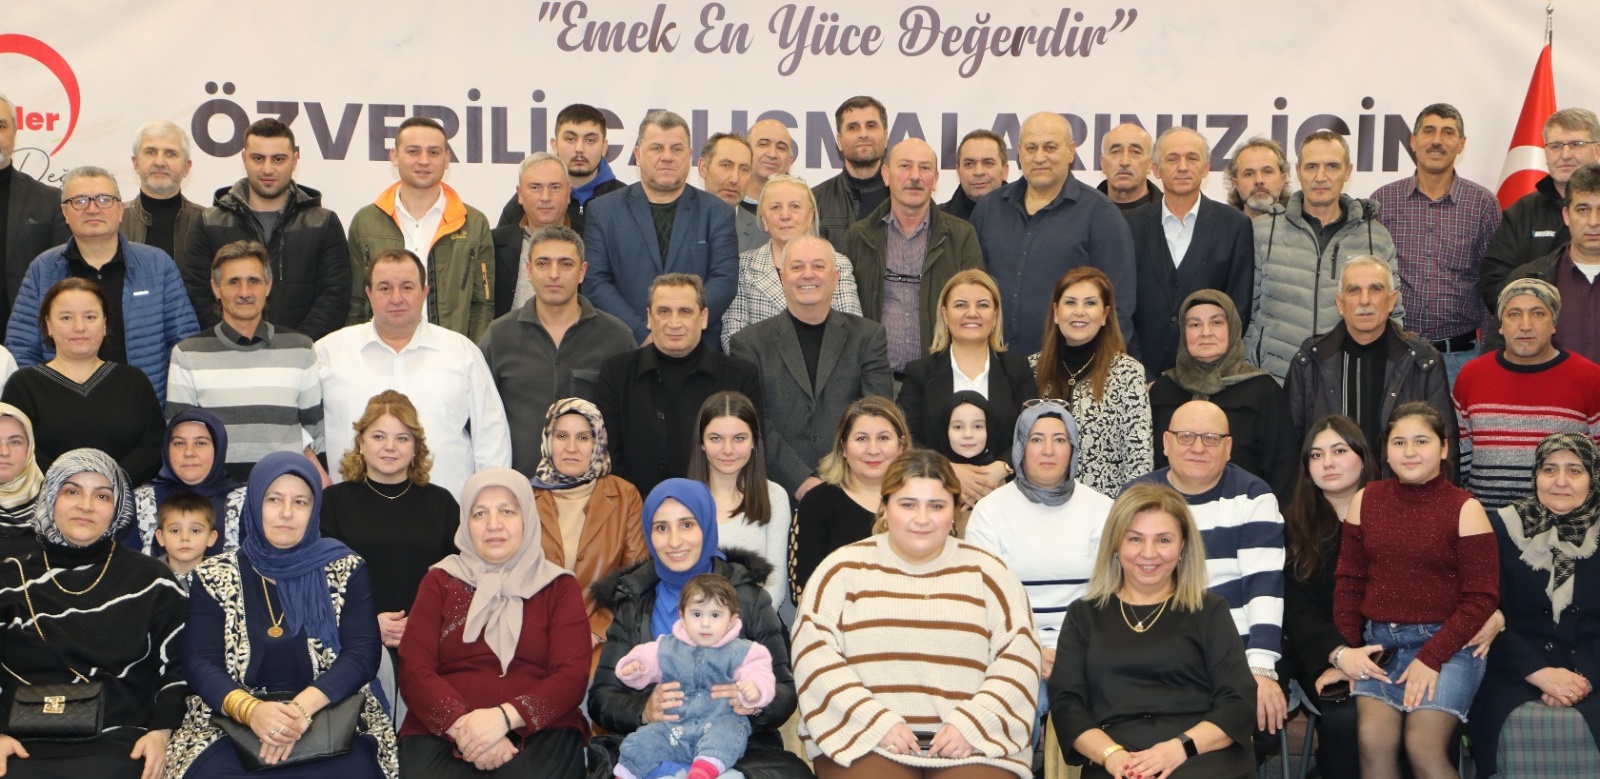 İzmit Belediyesi Emekli Personellerine Ahde Vefa Örneği Gösterdi: Başkan Hürriyet, “Emekli arkadaşlarımız her zaman bu ailenin bir parçası olacak”